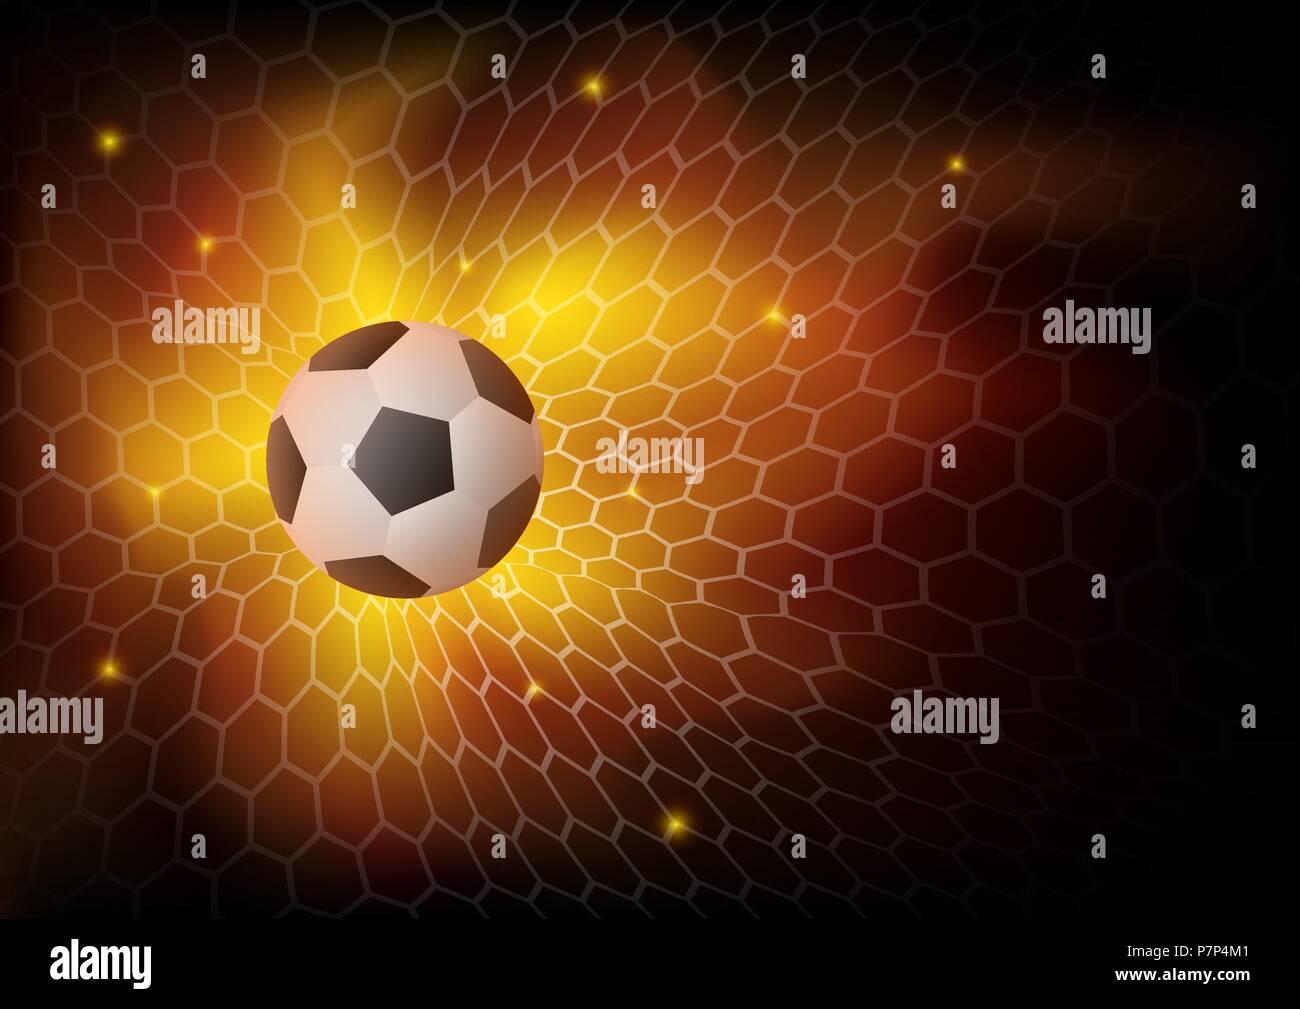 Feuer Fußball Hintergrund, Abstrakt ball spiel ziel Moment mit Ball im Netz. Vector Illustration für die Fußball-Weltmeisterschaft, Spiele. Stock Vektor